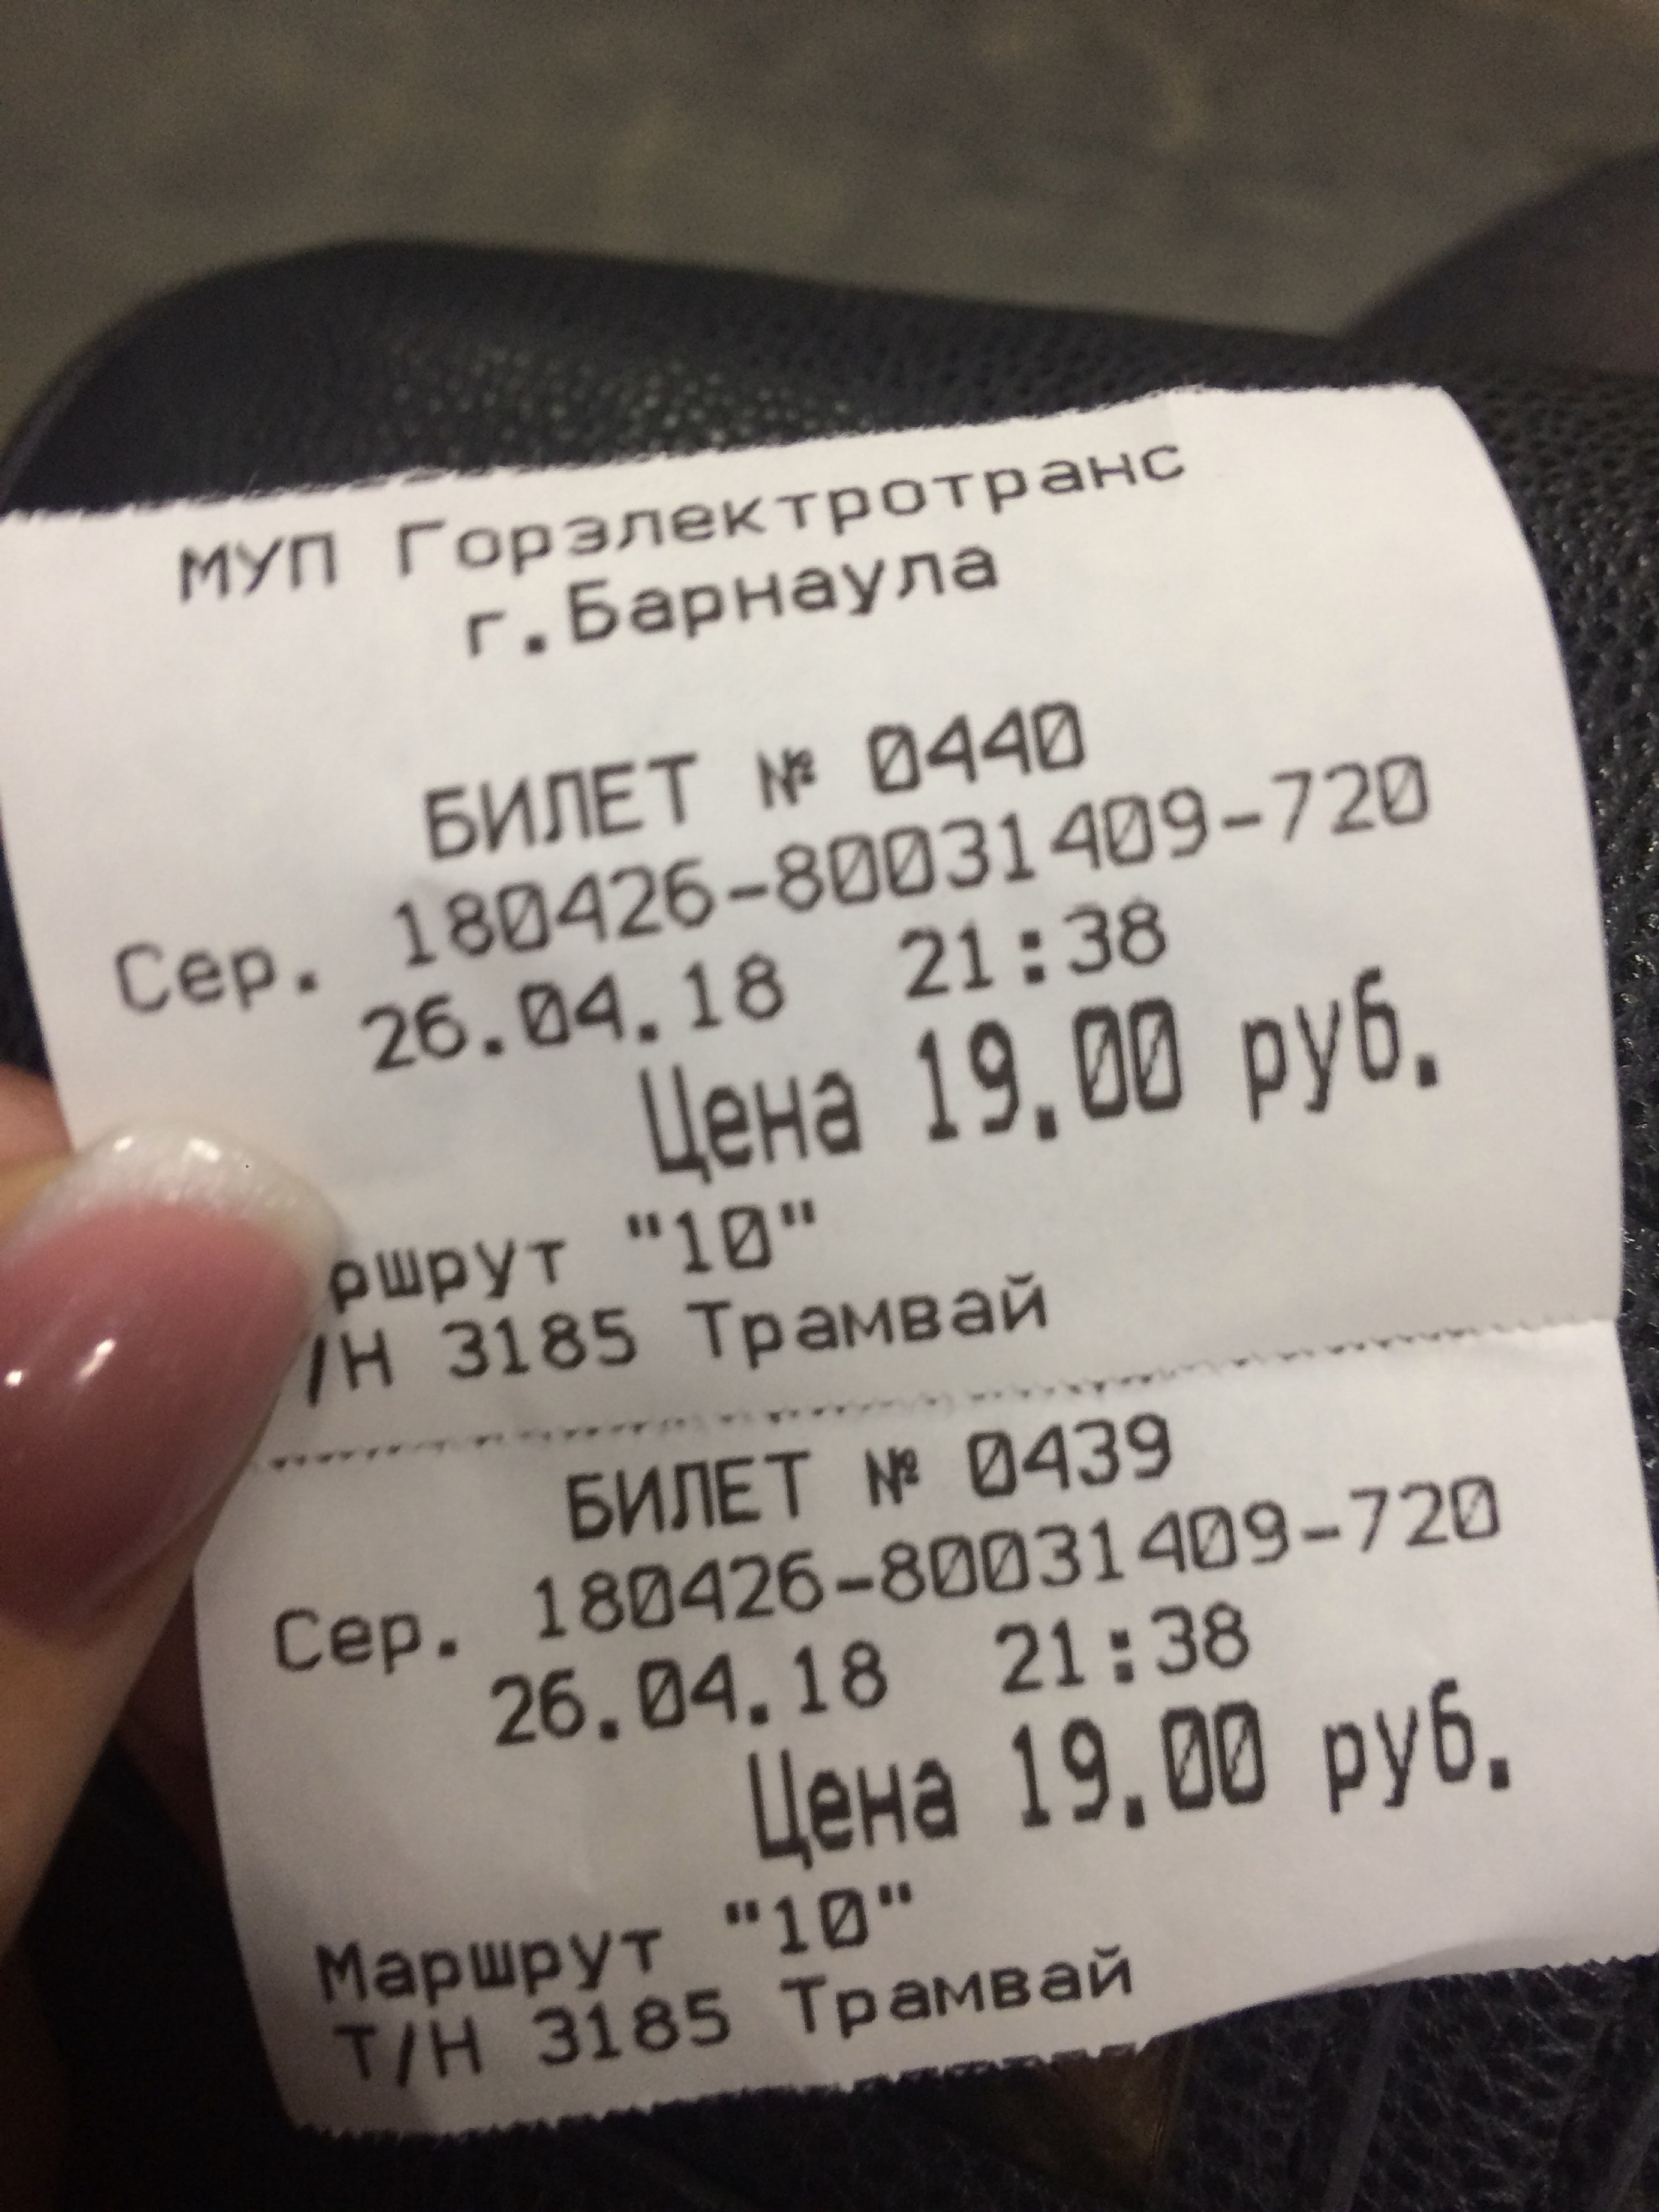 Купить билет барнаульский автовокзал. Билеты Барнаул. Билет Барнаул Новосибирск. Билеты Бийск Барнаул. Билет до бар.